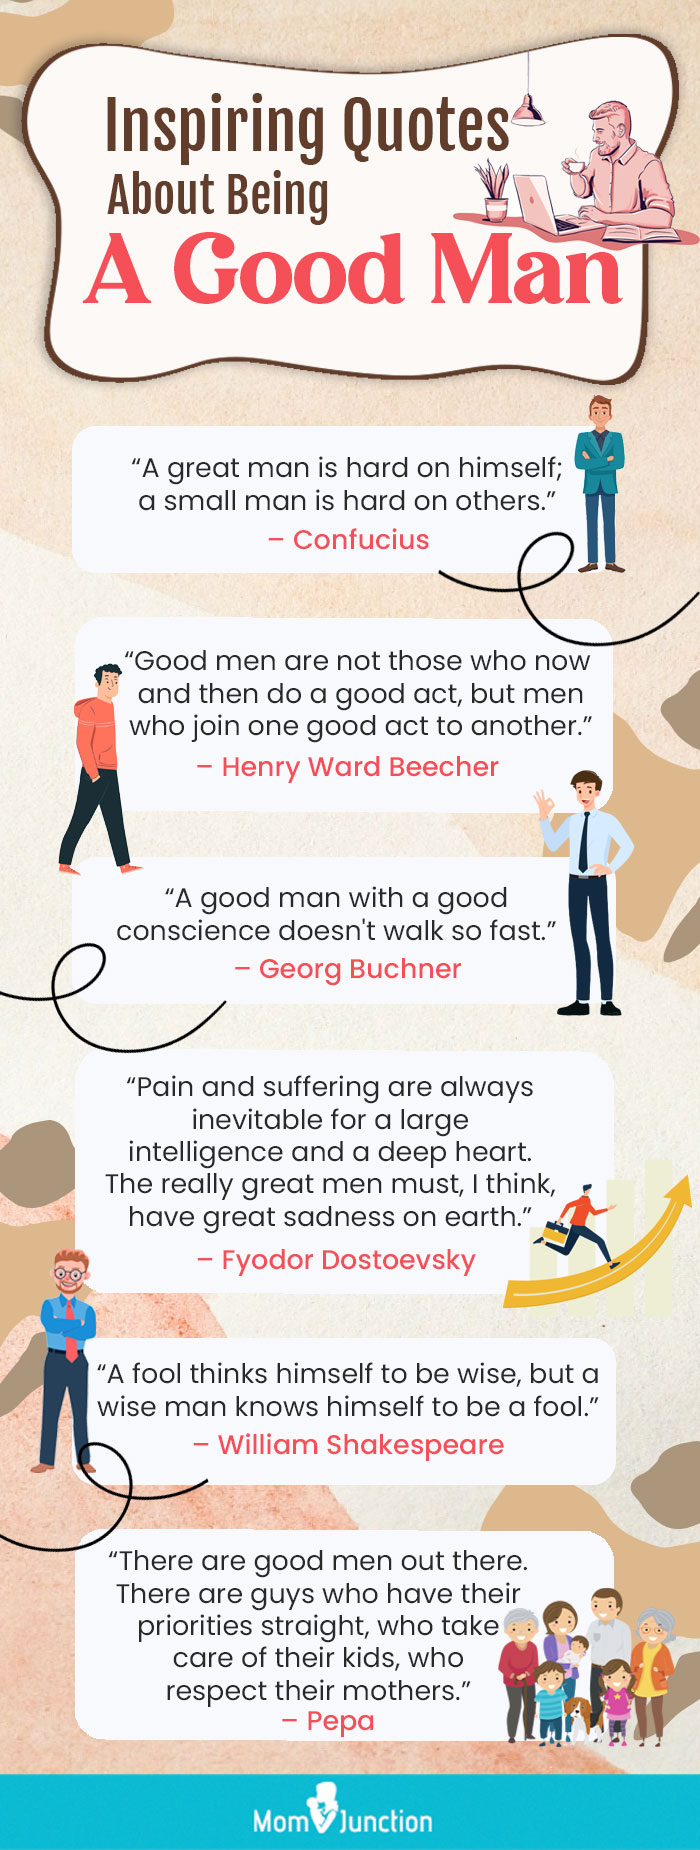 About Men